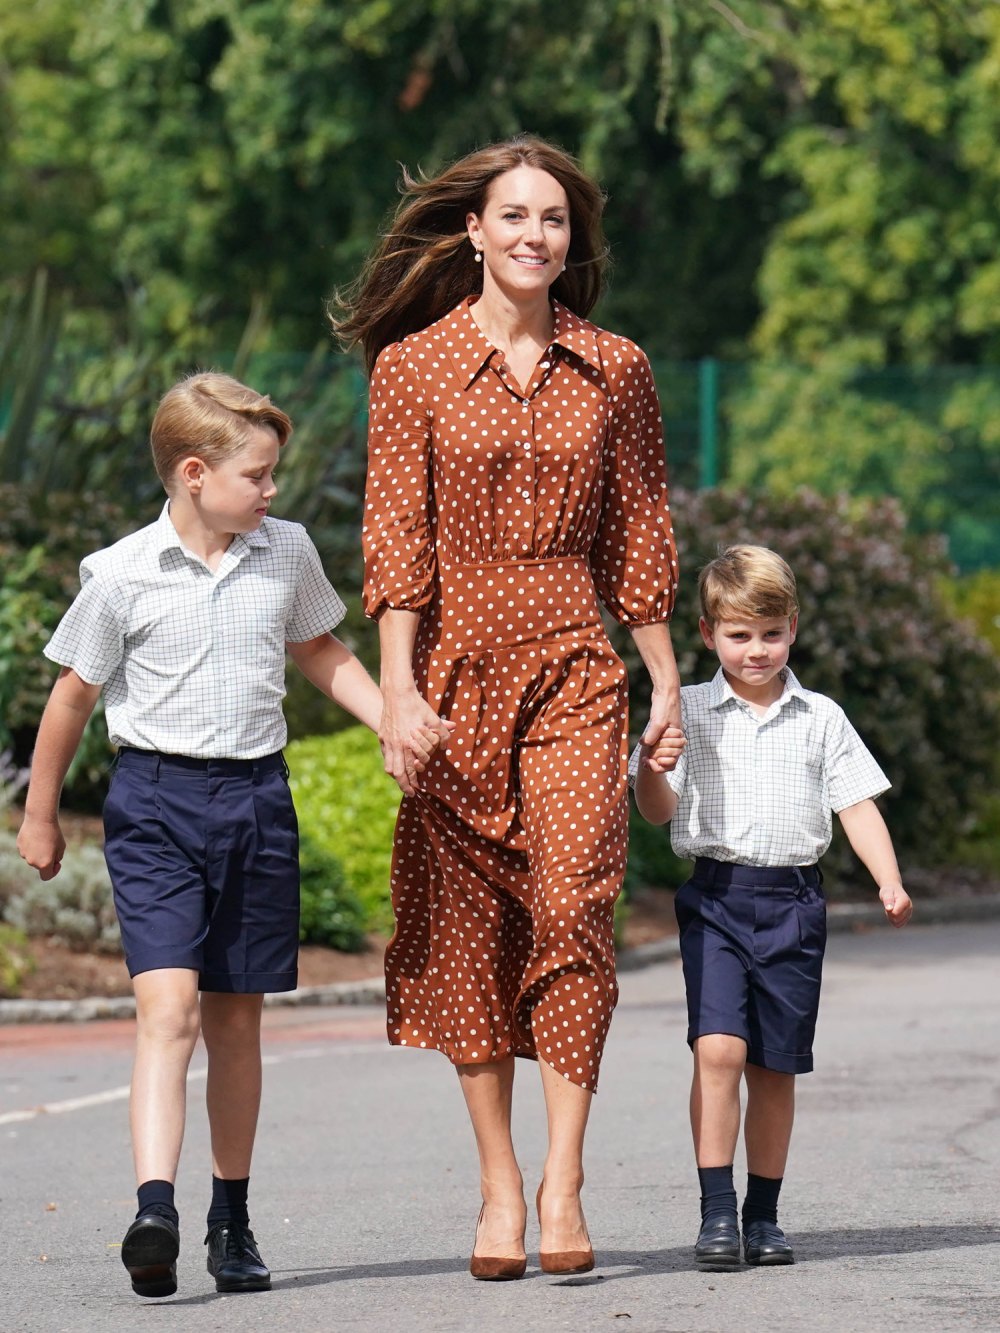 Prinz William verrät, warum Kate Middleton die Singapur-Reise ausgelassen hat